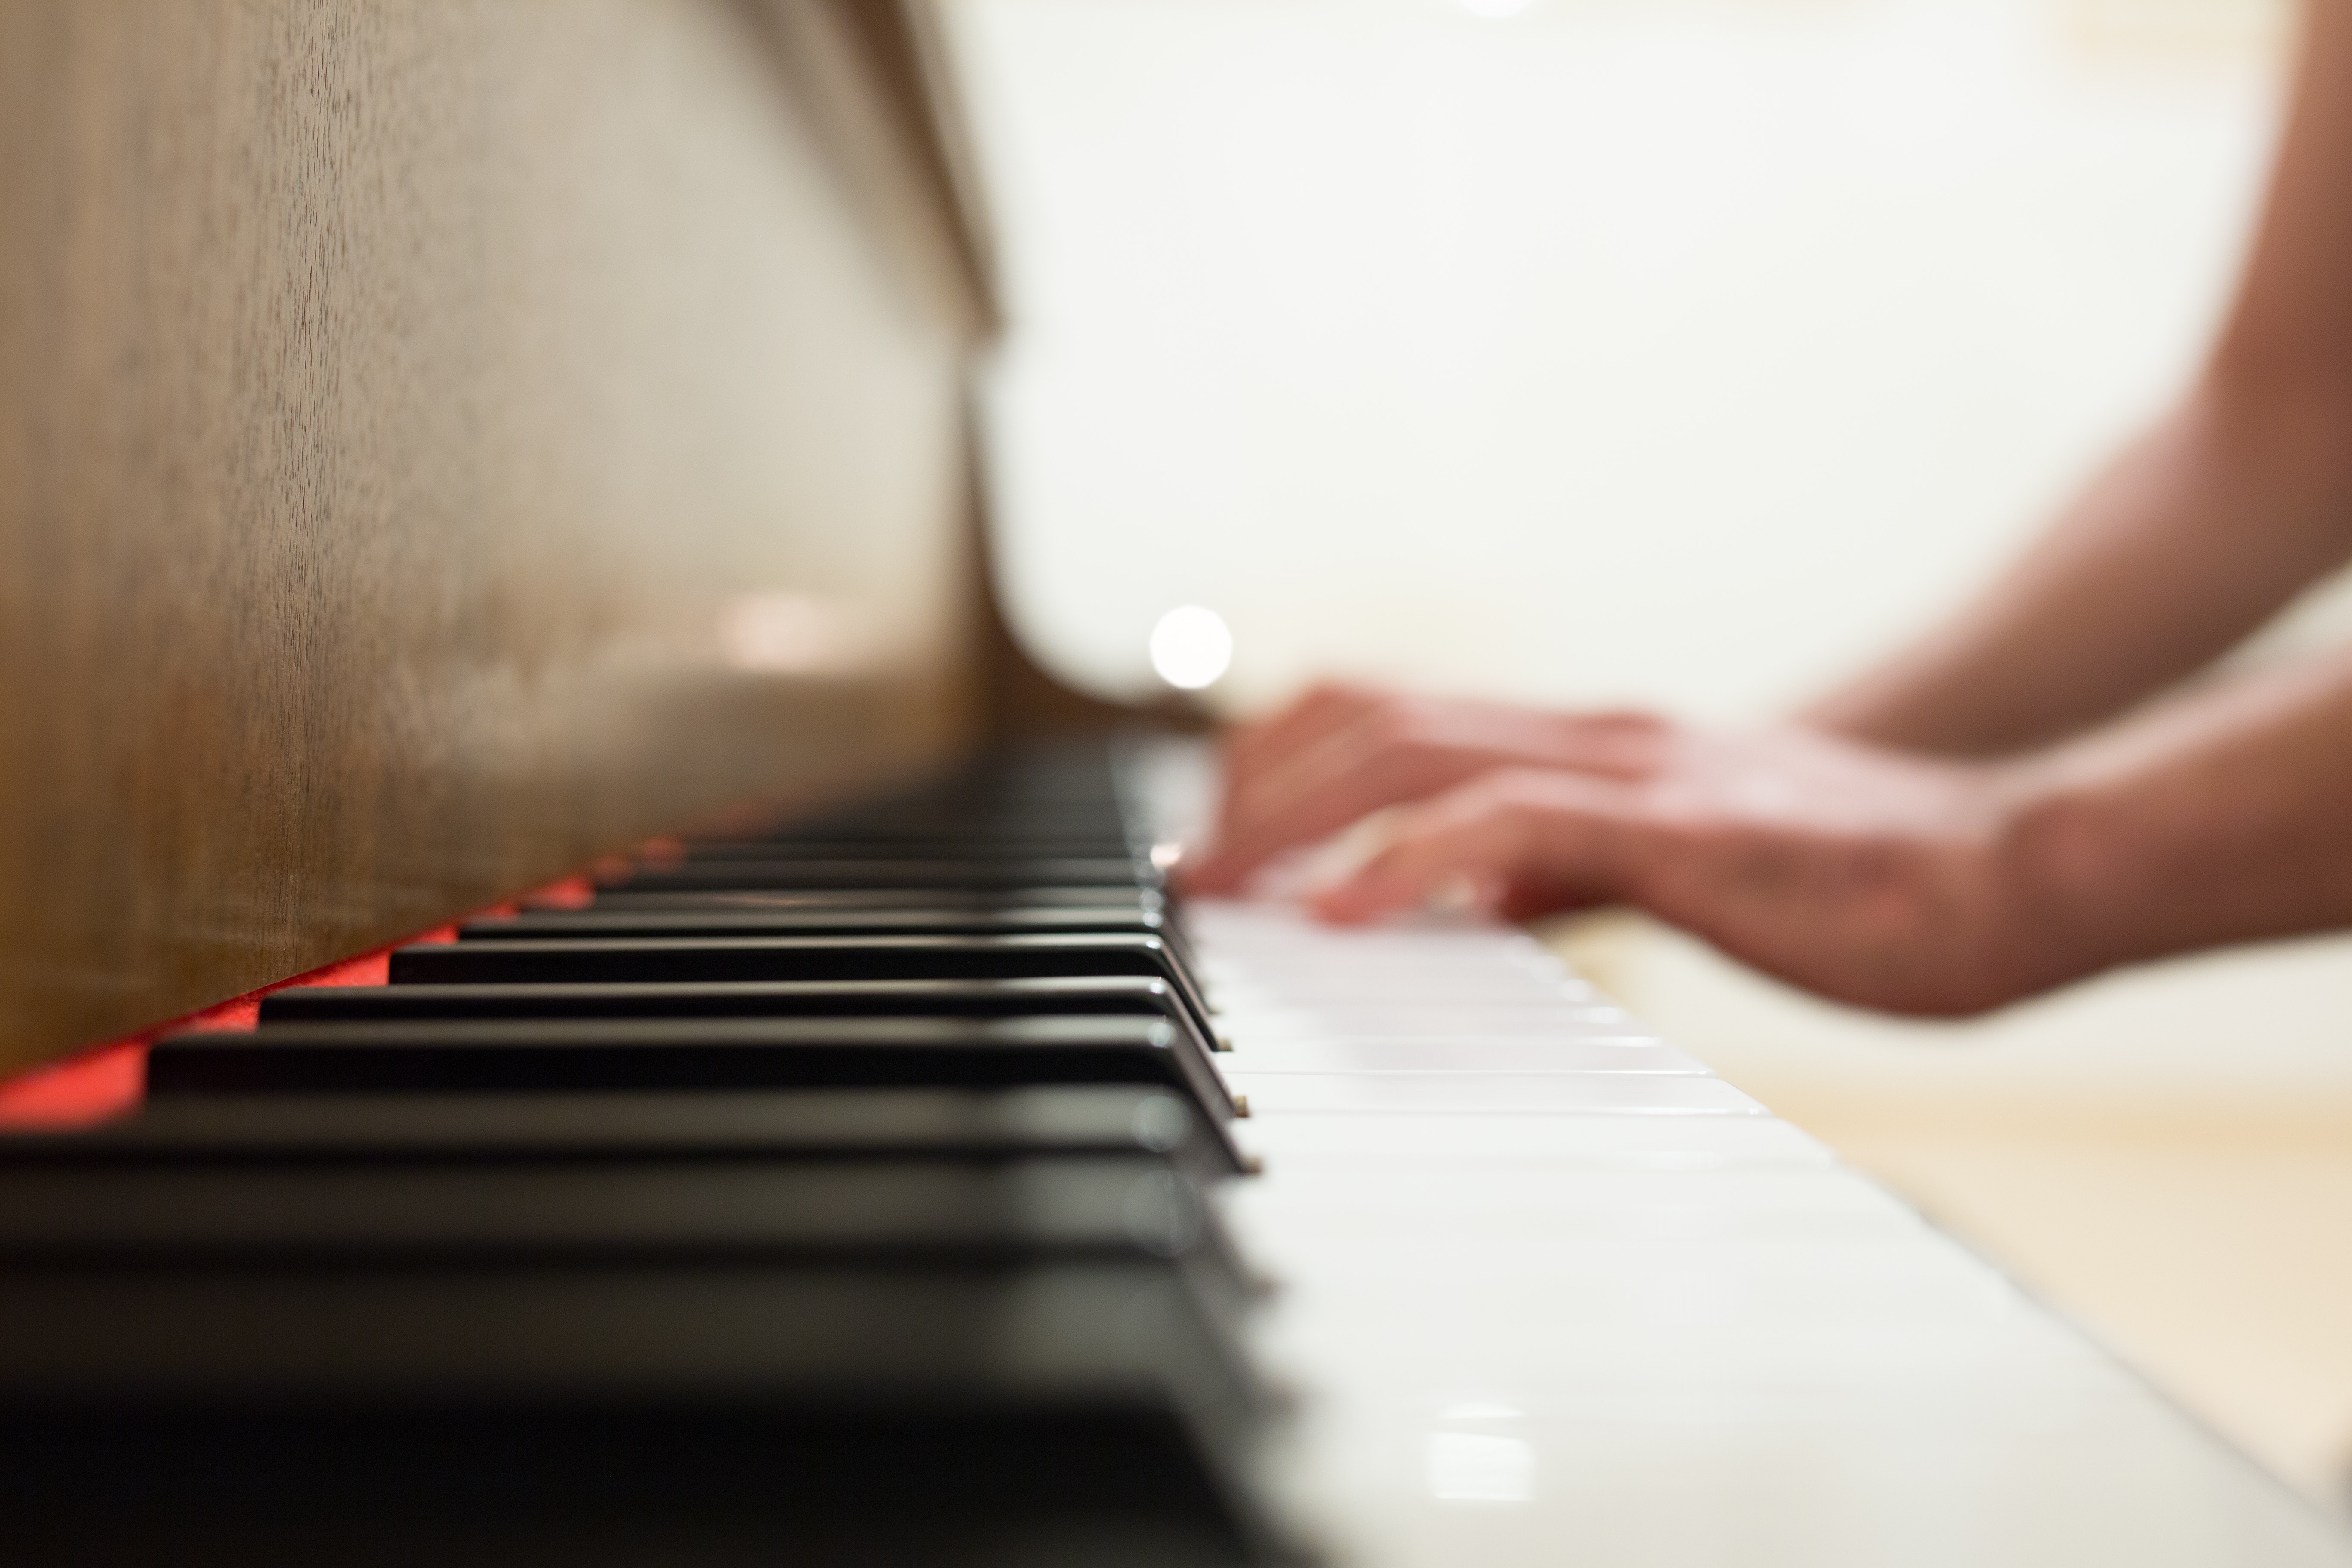 Le piano: un des 10 meilleurs instruments pour que les enfants apprennent à jouer de la musique